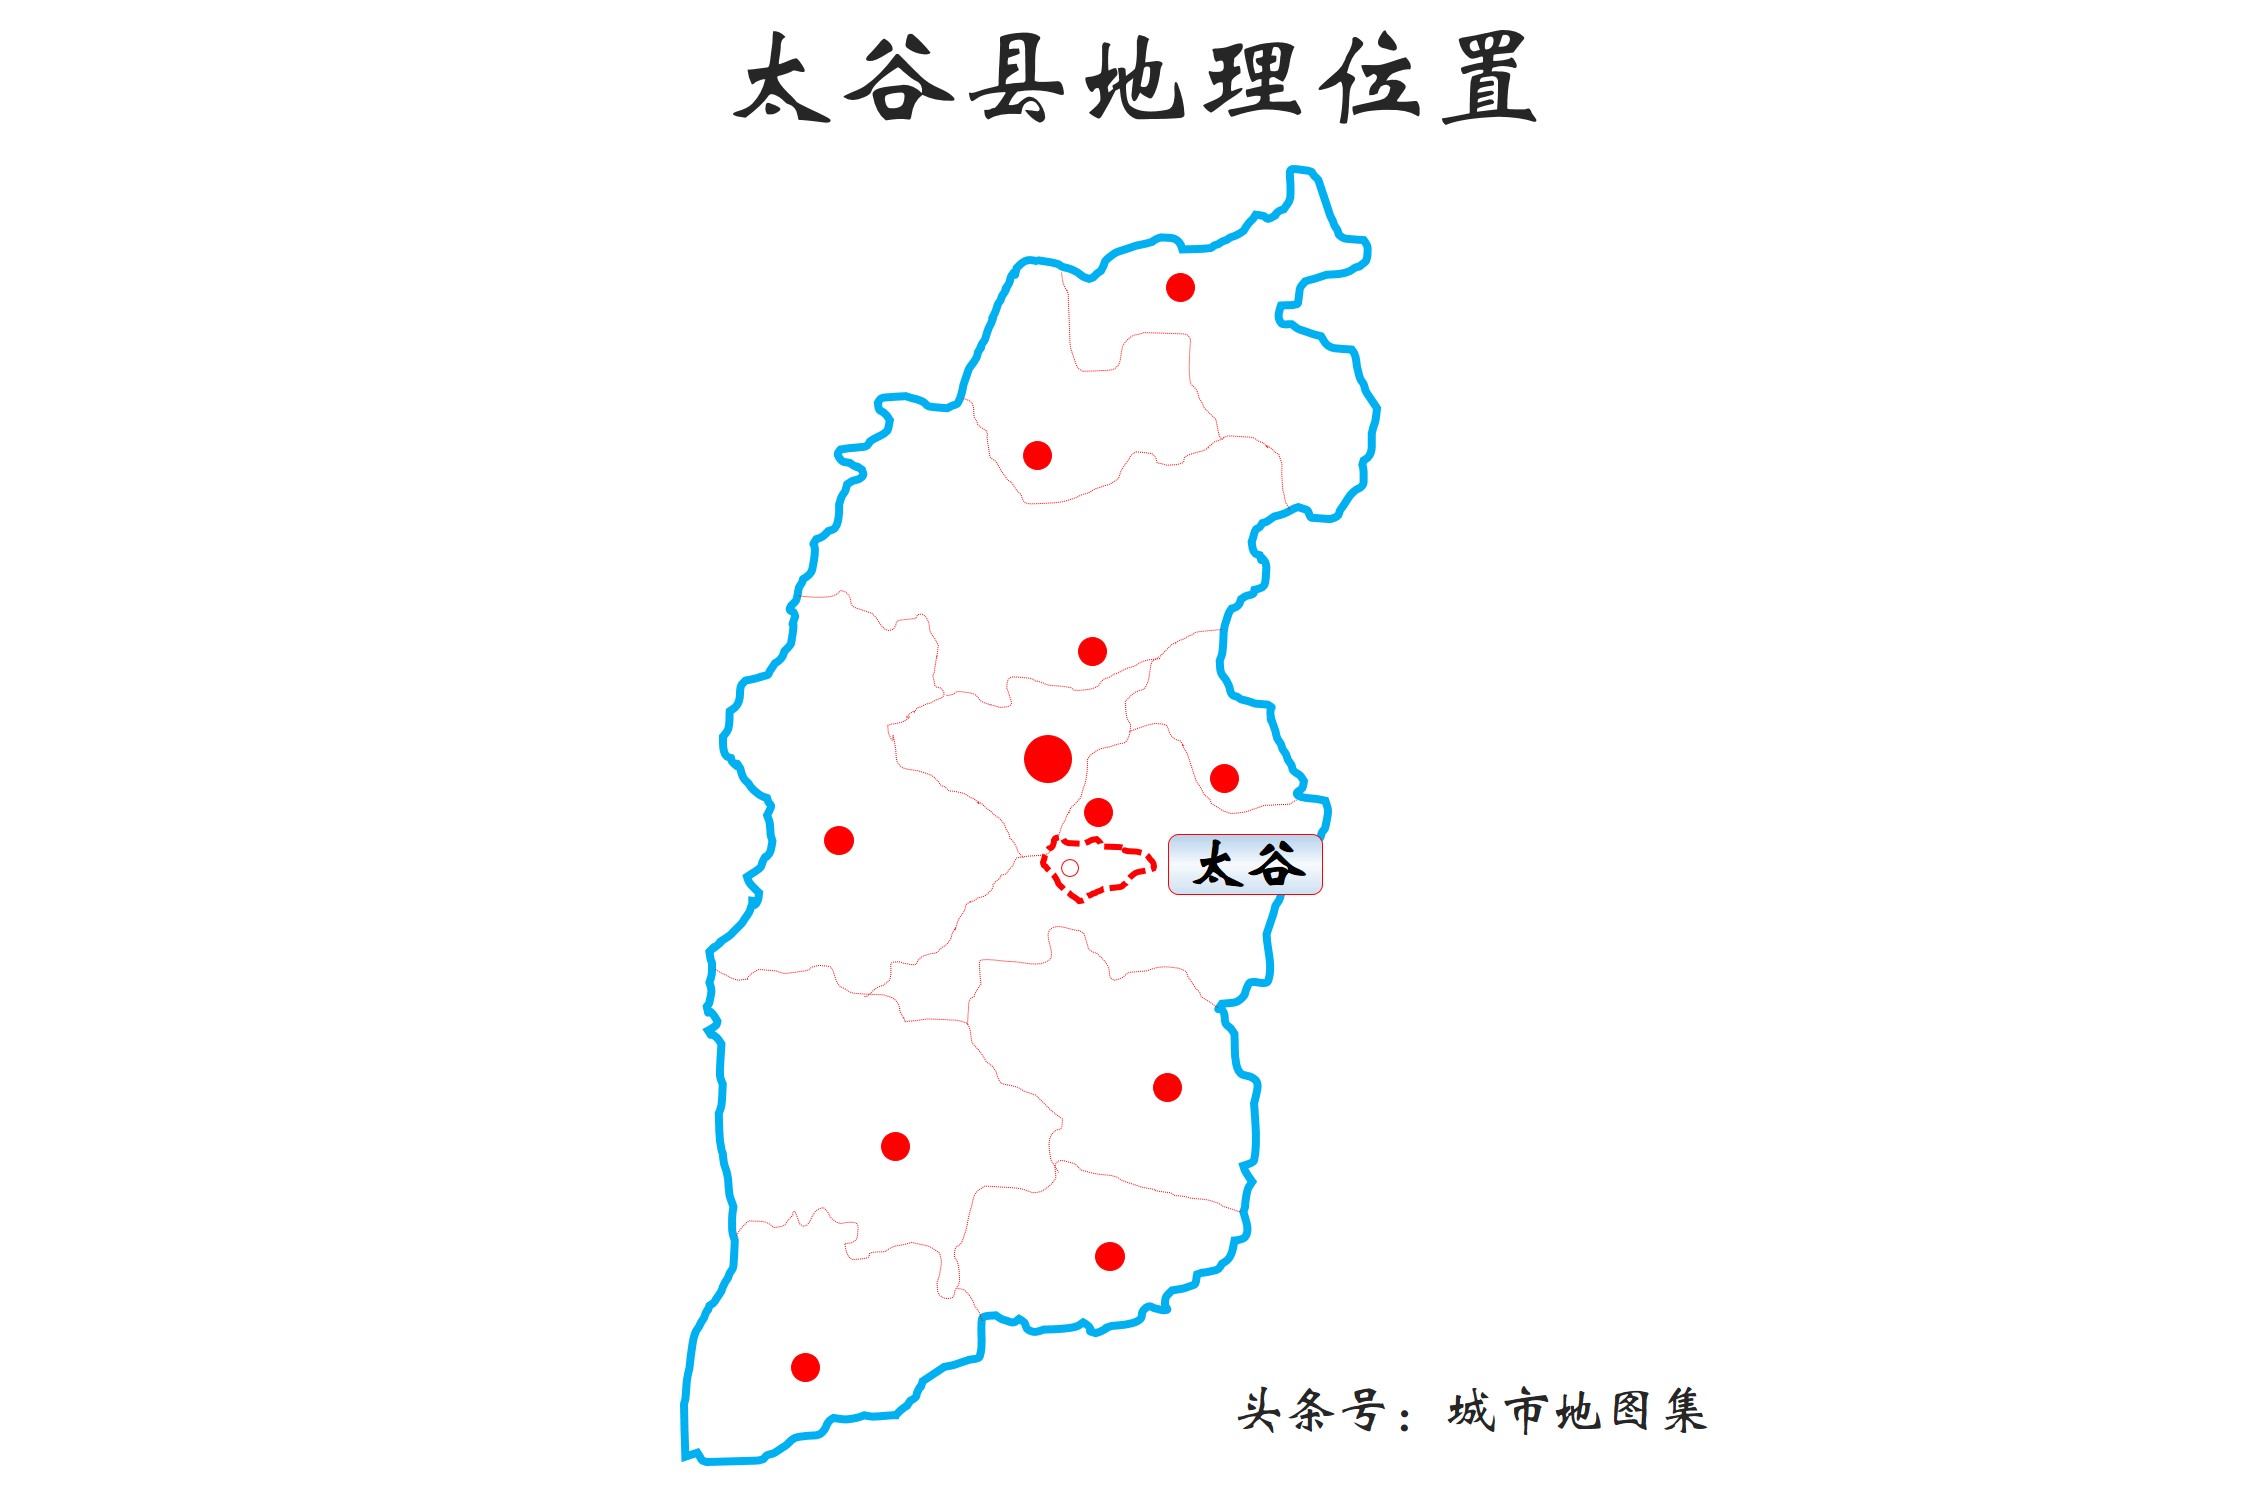 太谷县位于山西省中部太原盆地,是晋中市辖县.